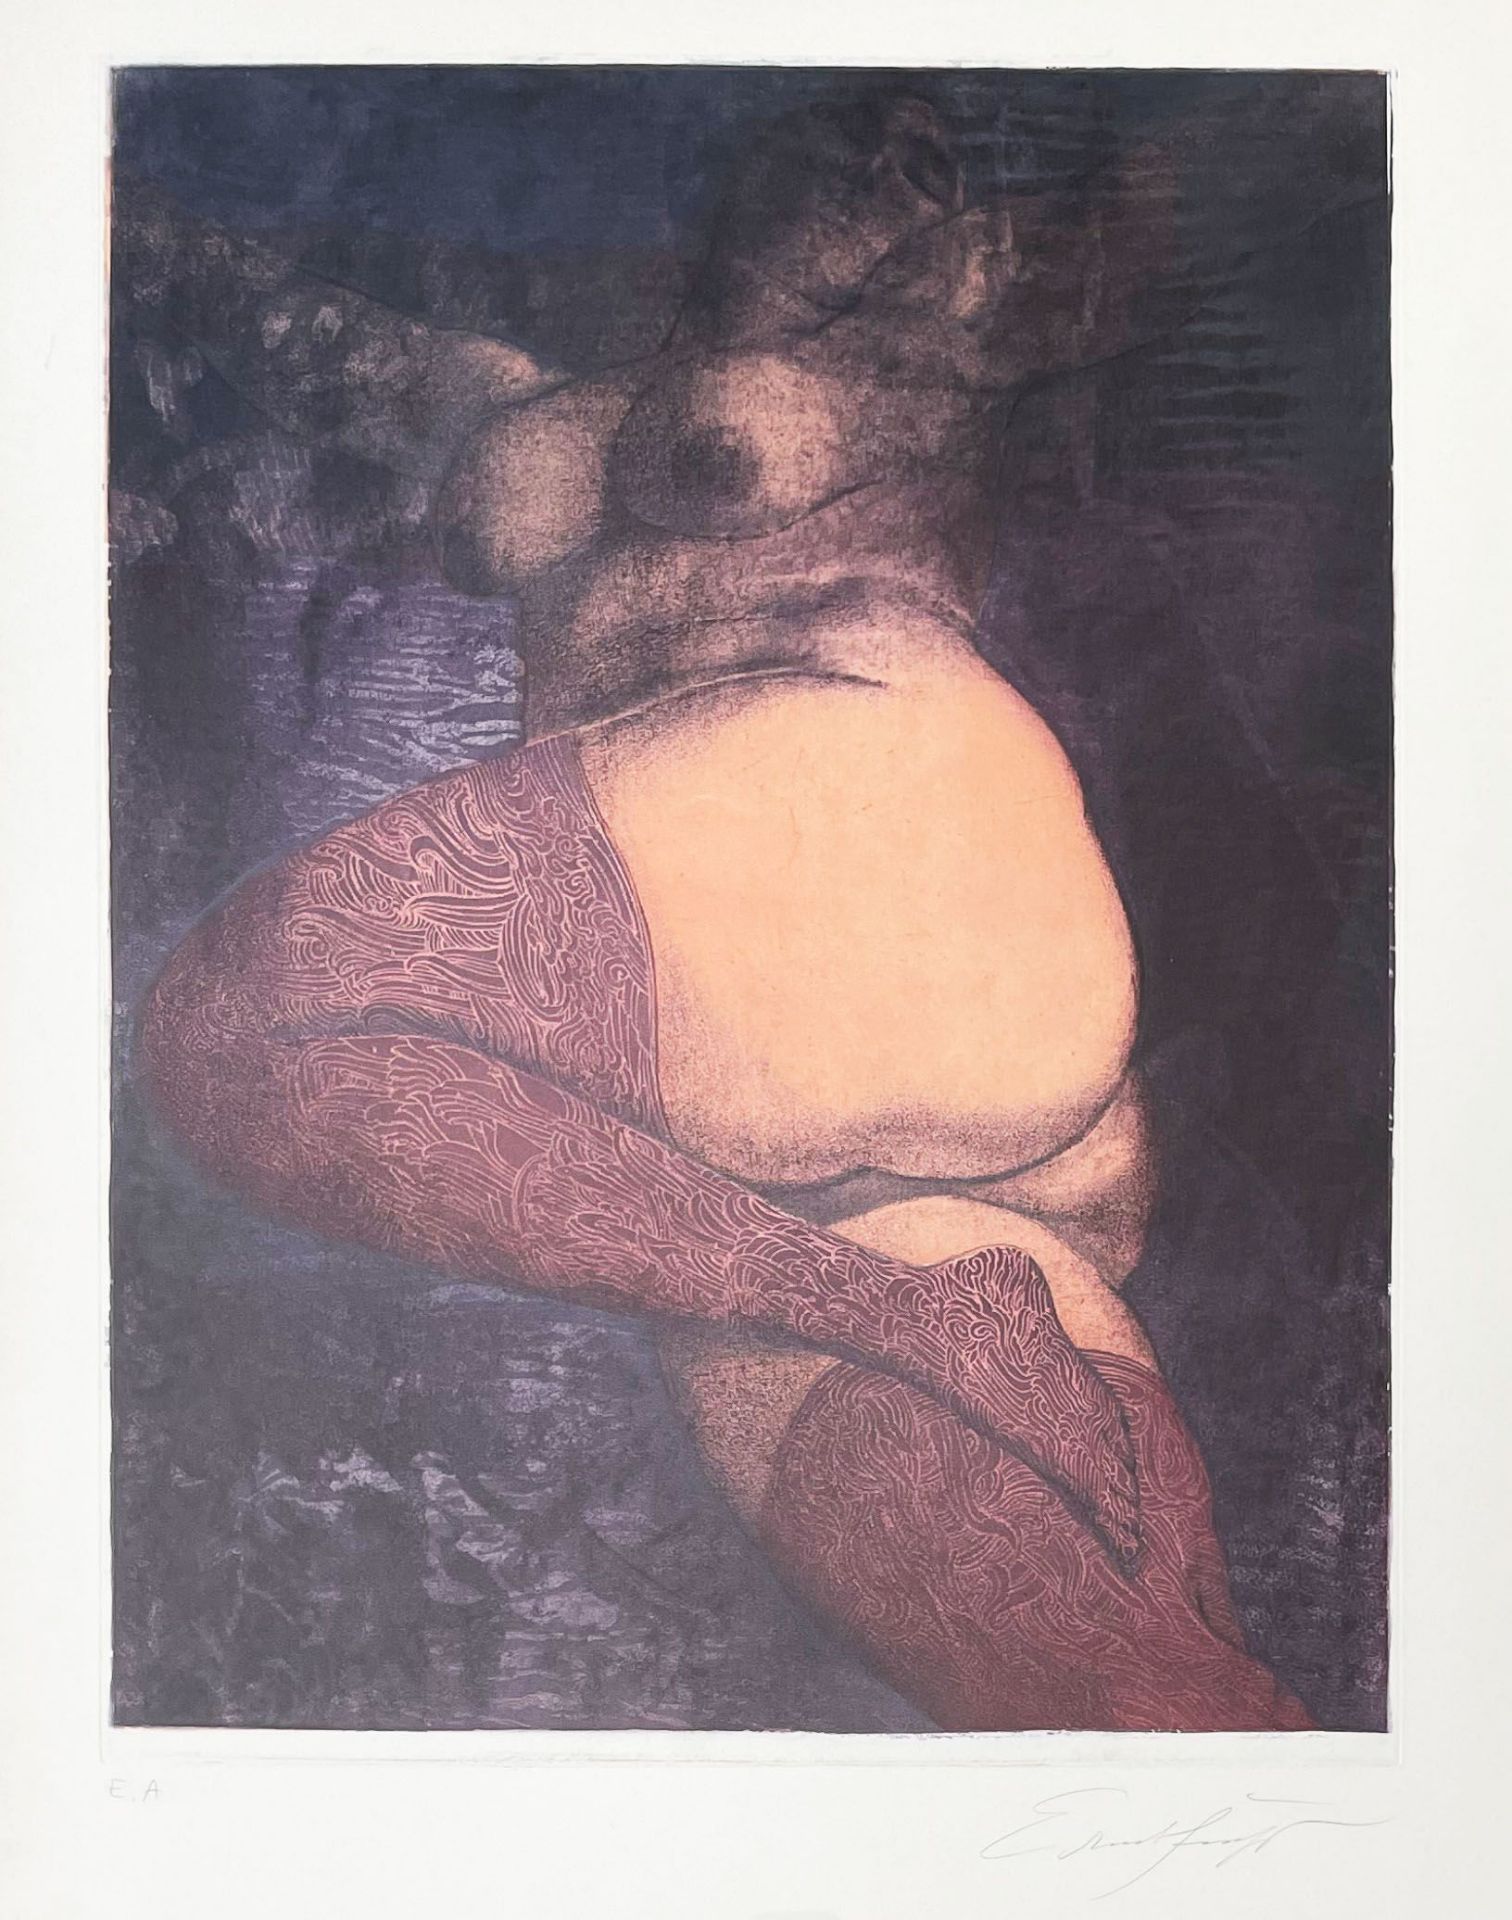 Ernst Fuchs (1930 - 2015 Wien), Im Bett oder Die große Nana, 1972, Farbaquatintaradierung, 66 x 50,5